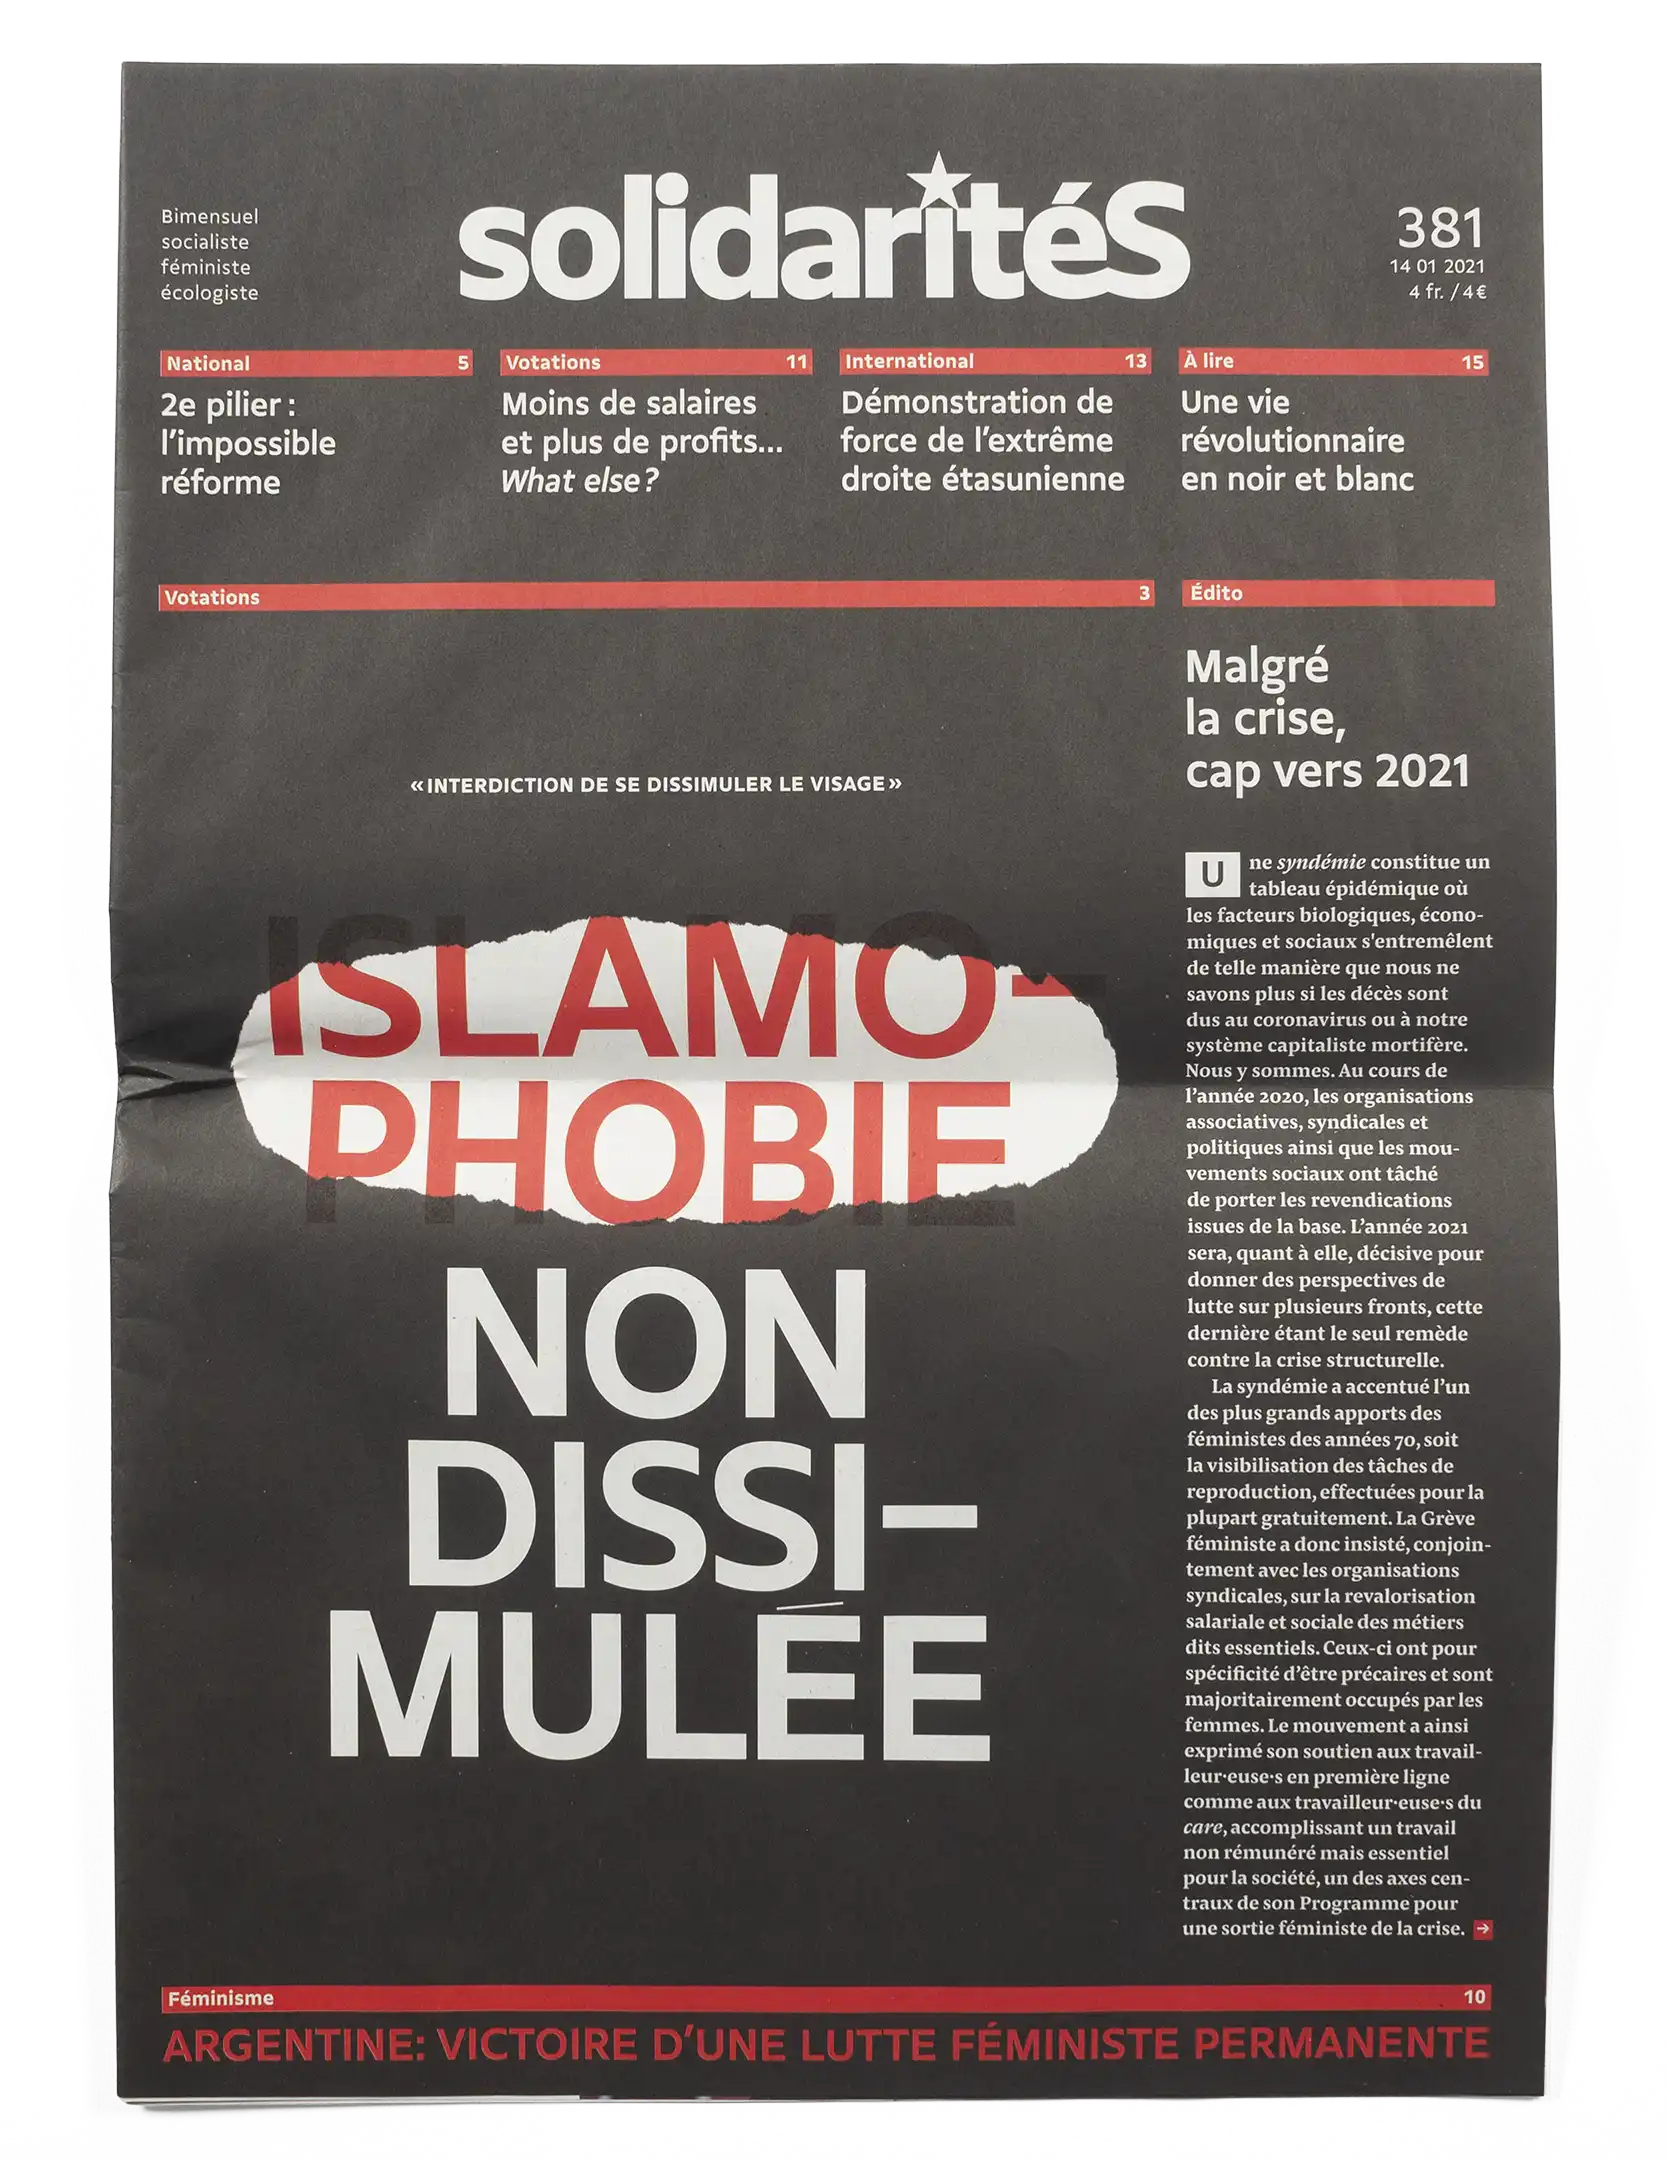 Couverture du numéro 381 du journal solidaritéS au sujet de l'initiative pour l'interdiction du voile